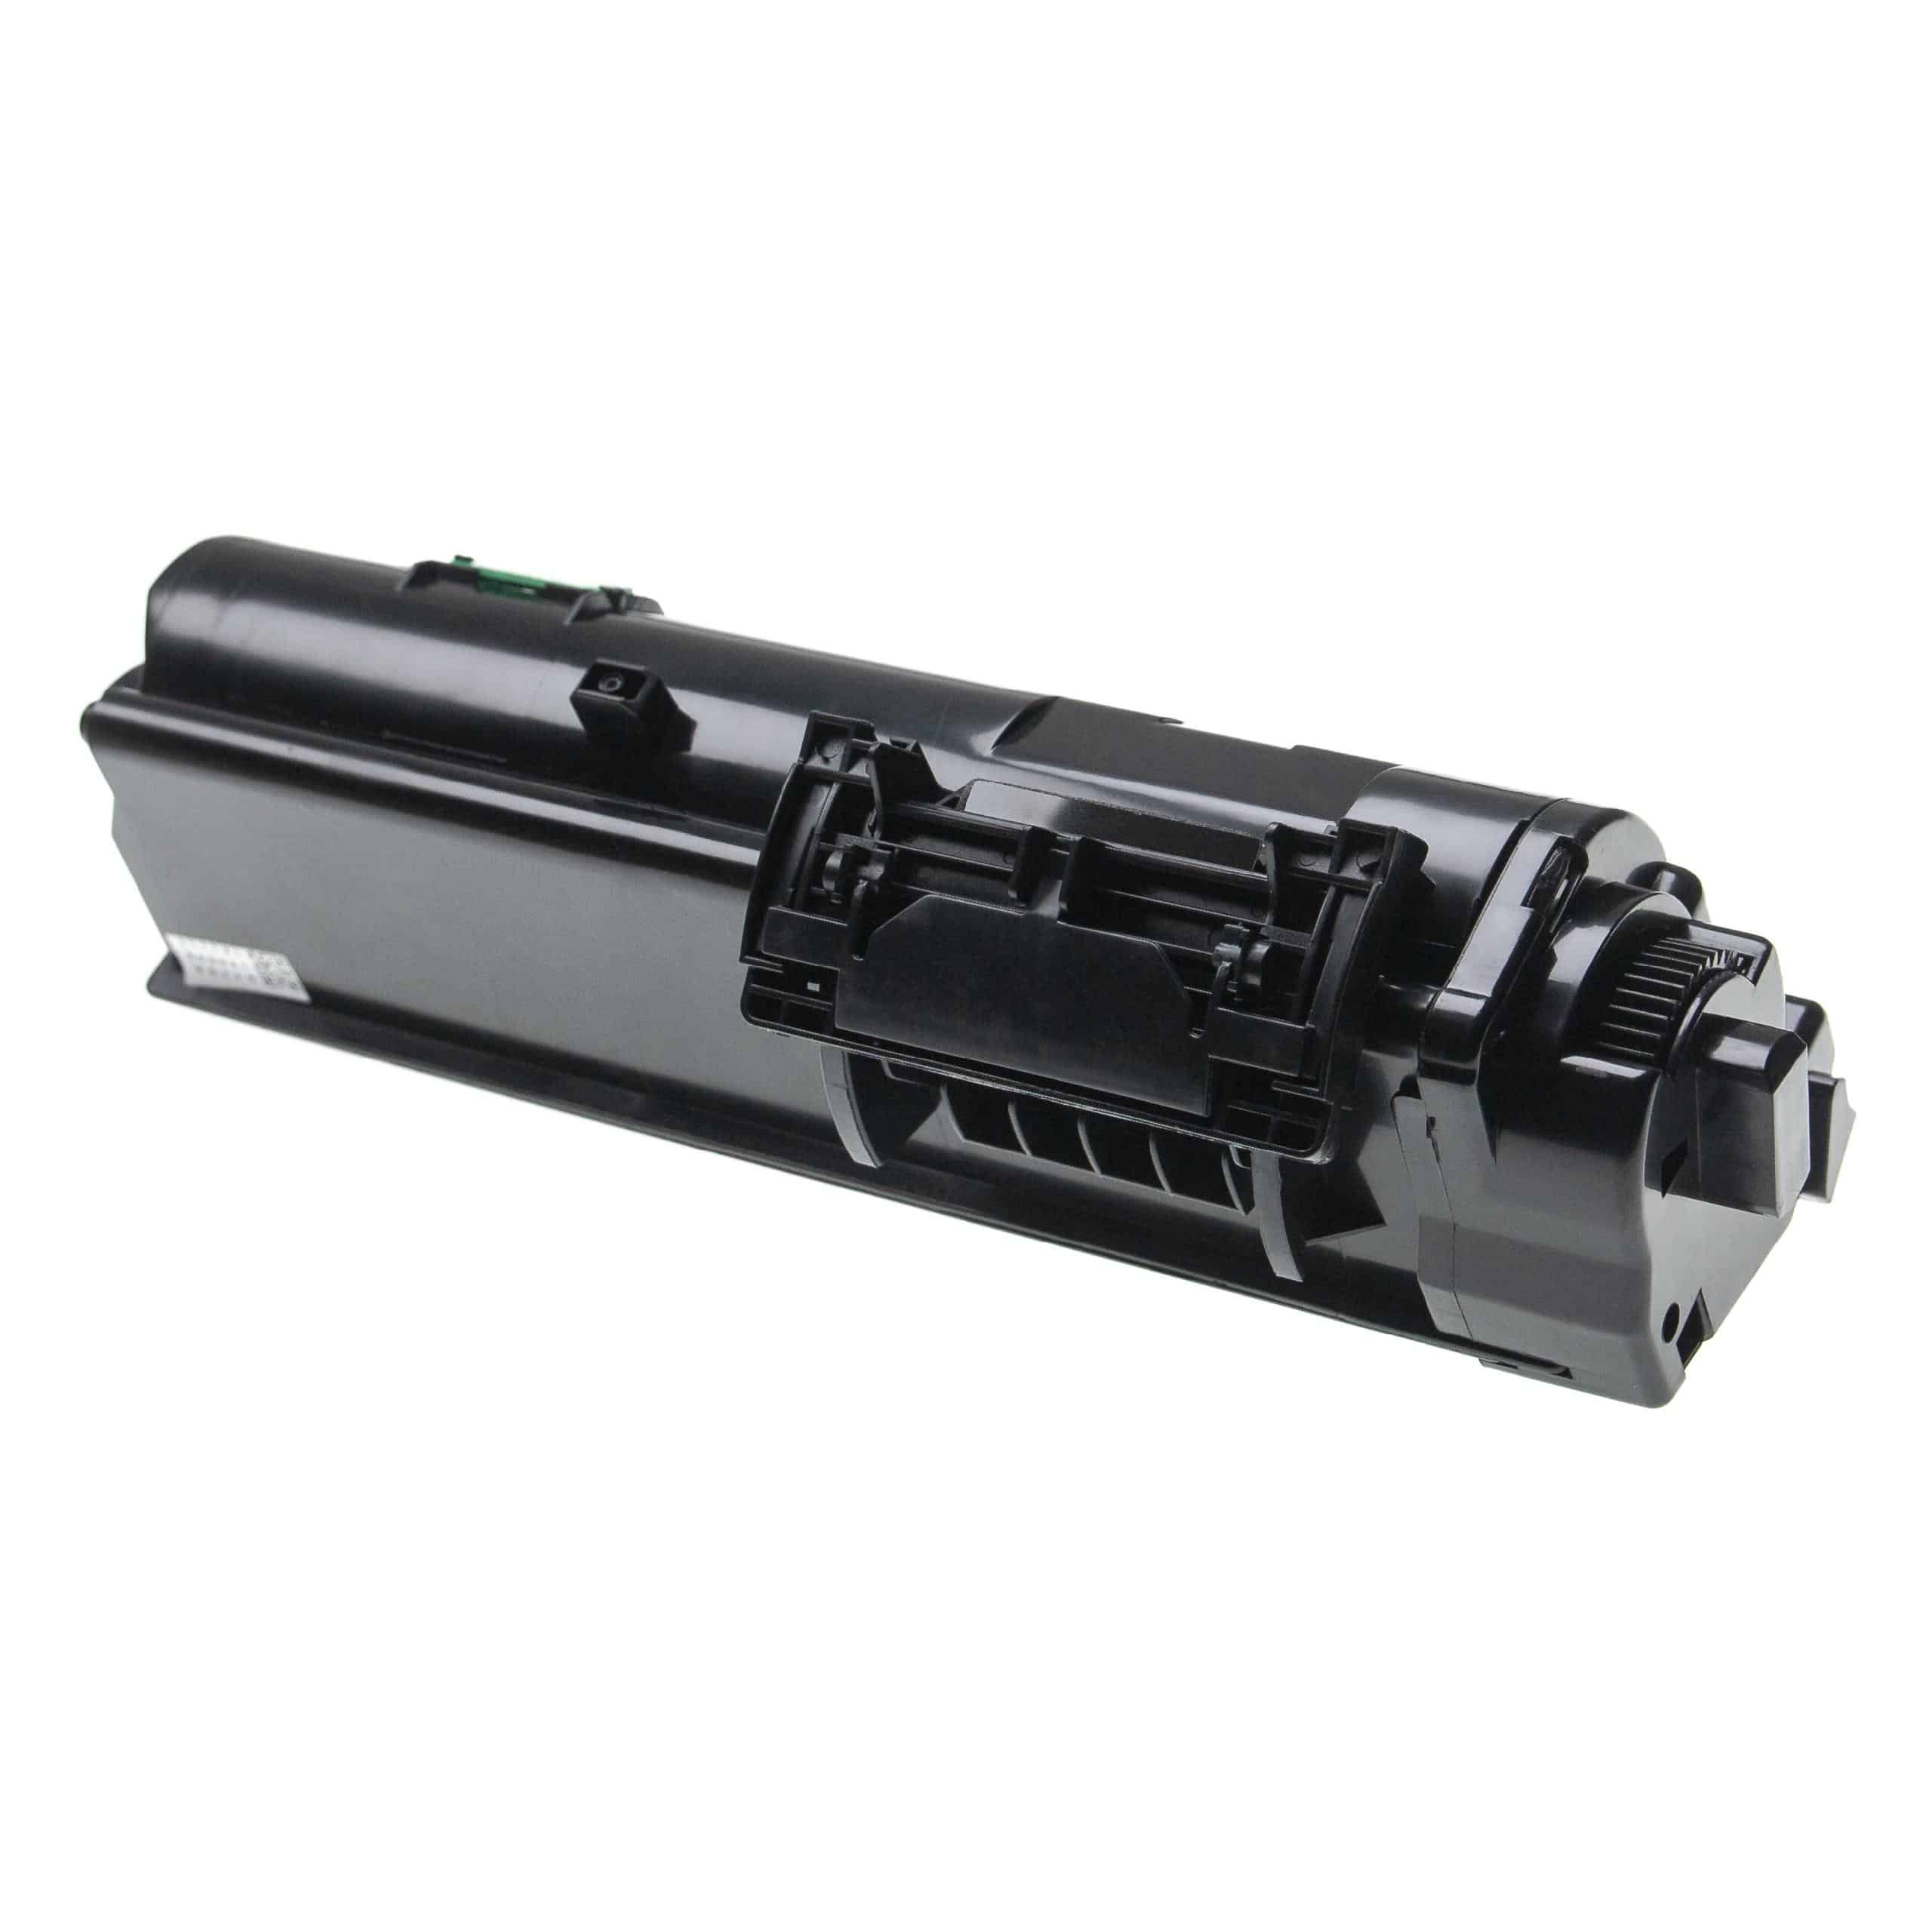 3x Toner als Ersatz für Kyocera TK-1150 für Kyocera Drucker, Schwarz